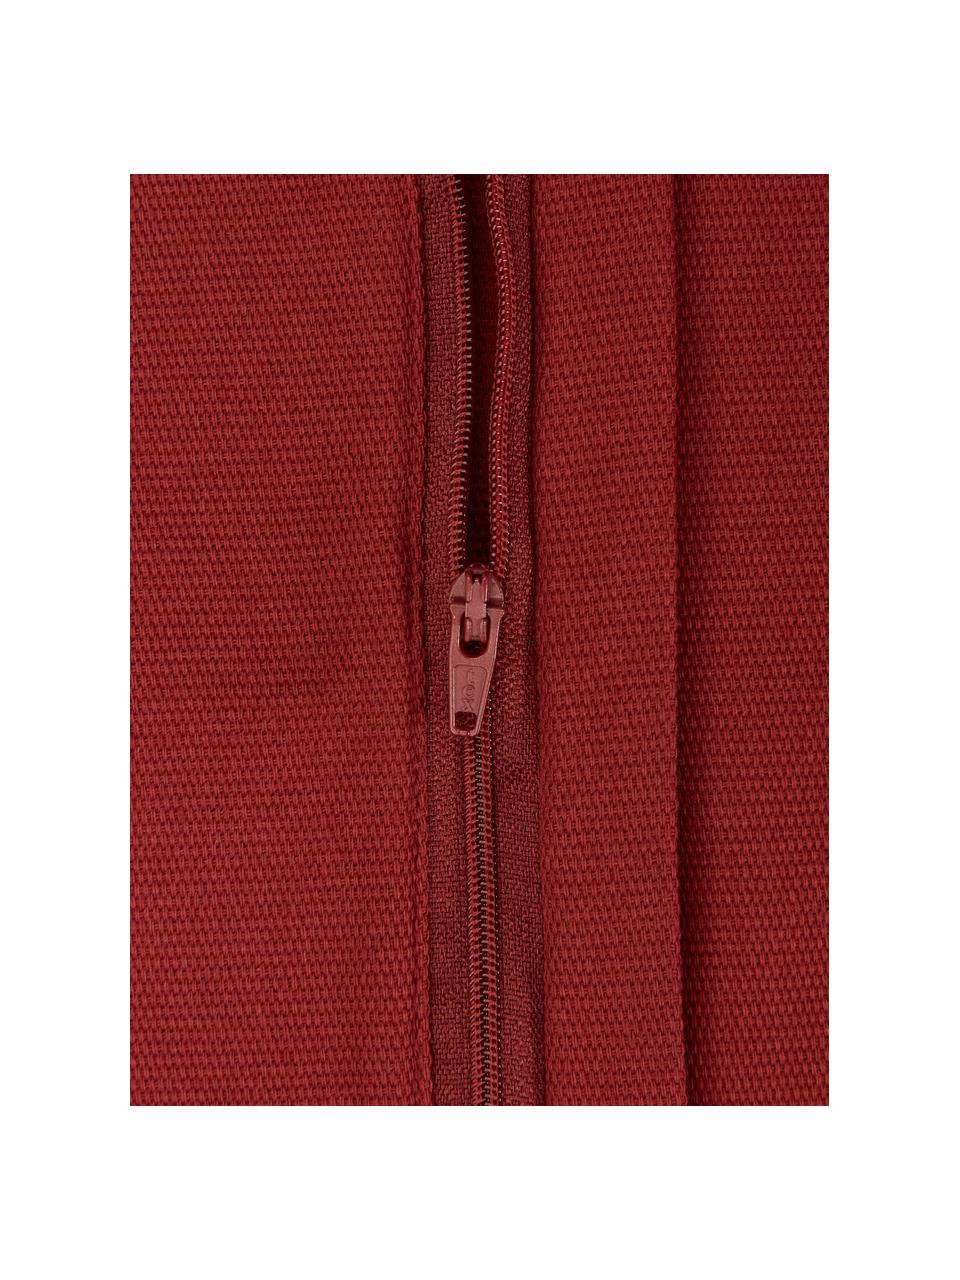 Housse de coussin en coton rouge foncé Mads, 100 % coton, Pourpre, larg. 40 x long. 40 cm